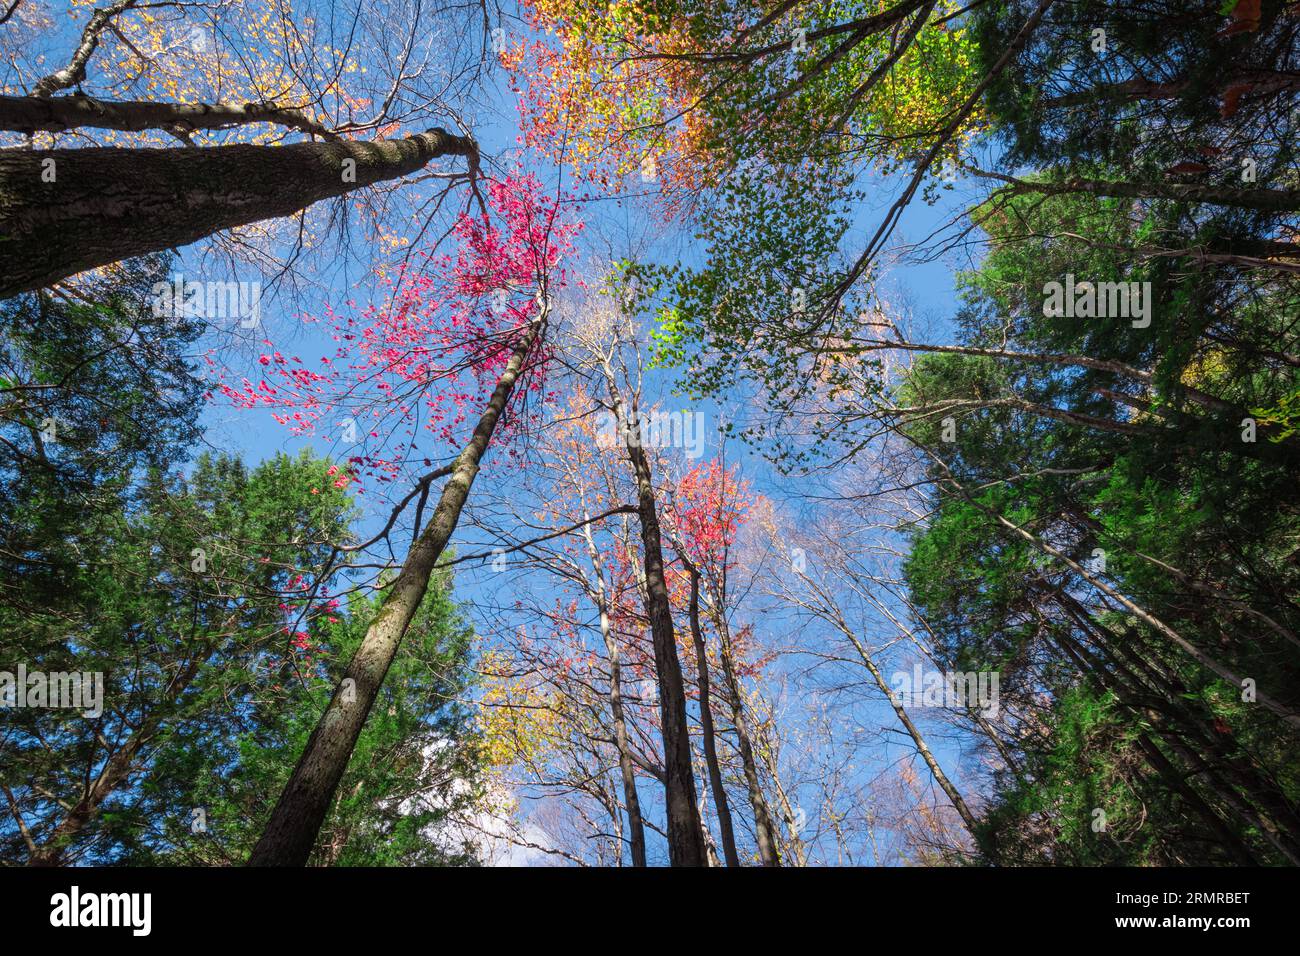 Alti alberi autunnali al Lye Brook Hollow di Manchester, Vermont, USA, in un pomeriggio di sole, con foglie autunnali di colore diverso contro un cielo blu. Foto Stock